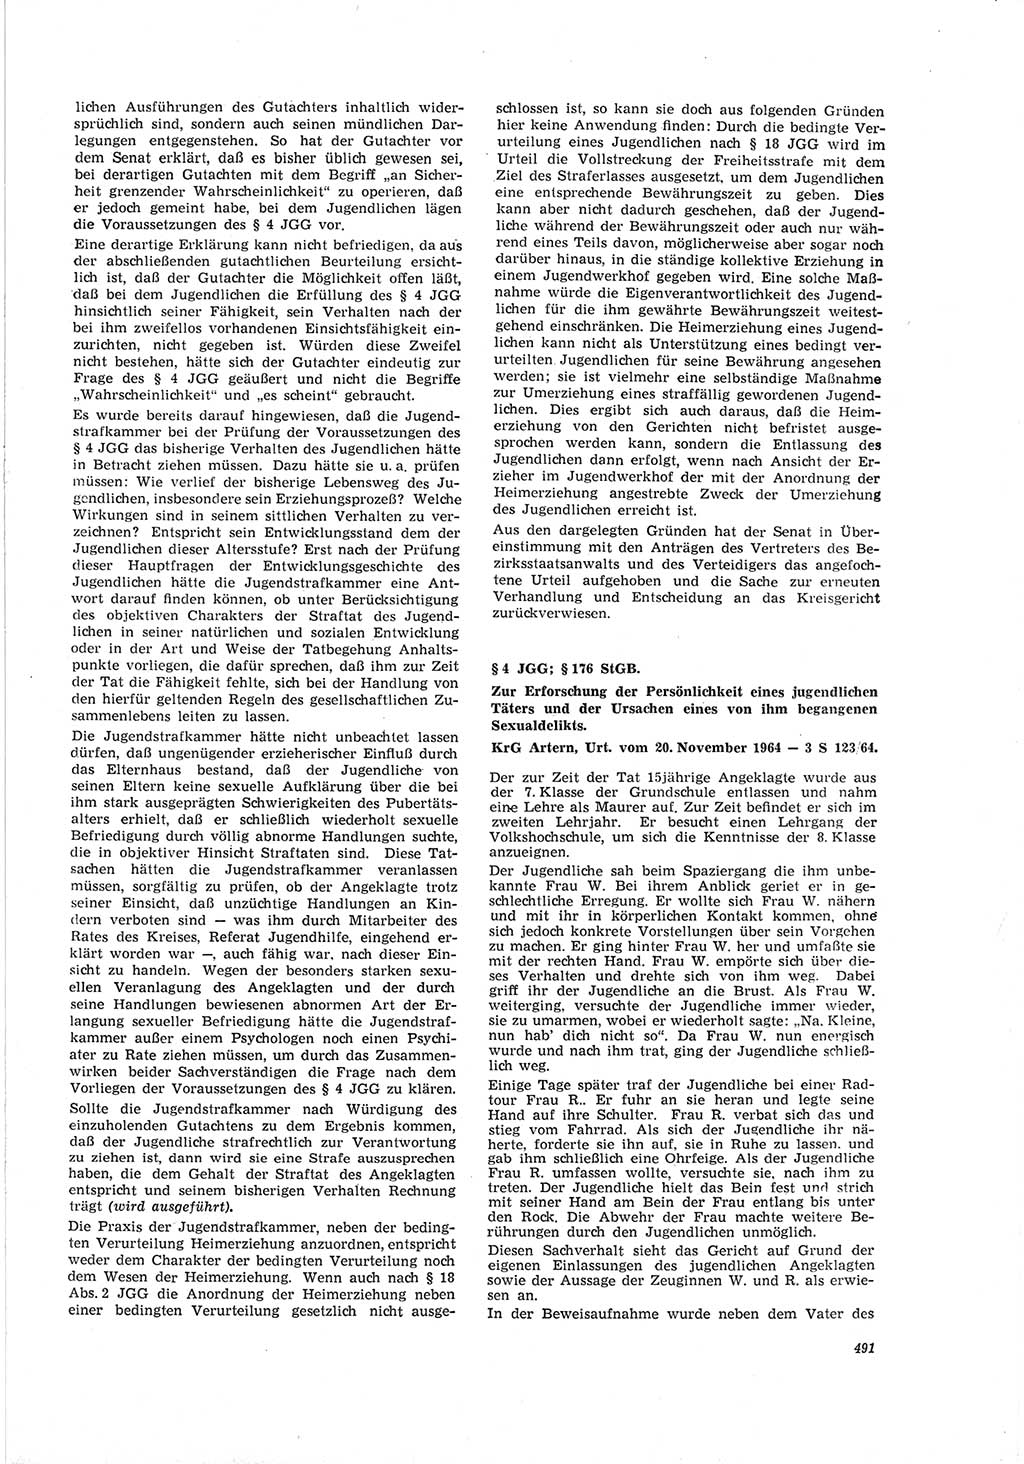 Neue Justiz (NJ), Zeitschrift für Recht und Rechtswissenschaft [Deutsche Demokratische Republik (DDR)], 19. Jahrgang 1965, Seite 491 (NJ DDR 1965, S. 491)